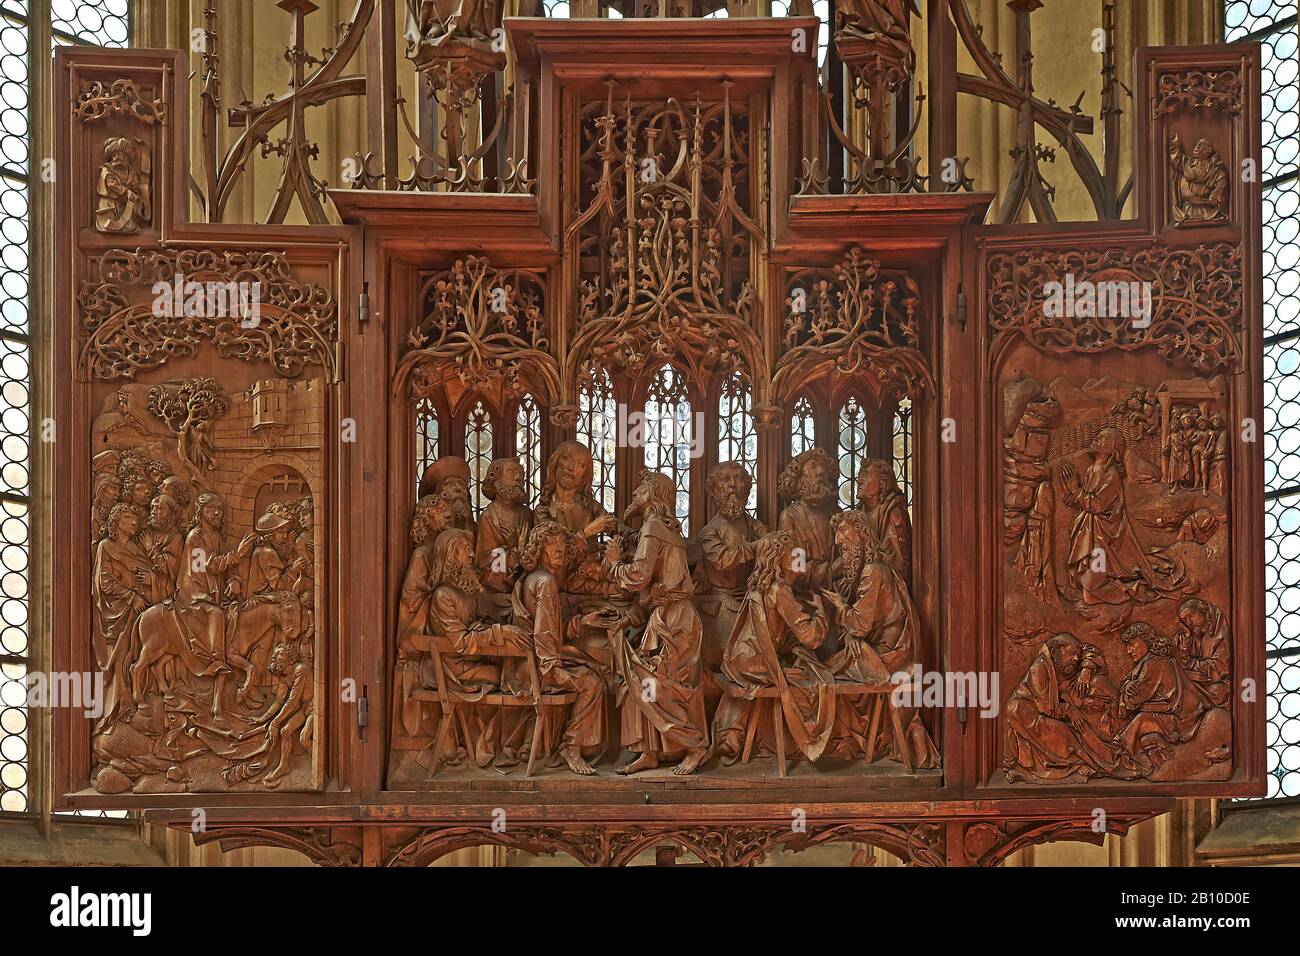 Heiliger Blutaltar, St. Jakobskirche, Rothenburg ob der Tauber, Mittelfranken, Bayern, Deutschland Stockfoto